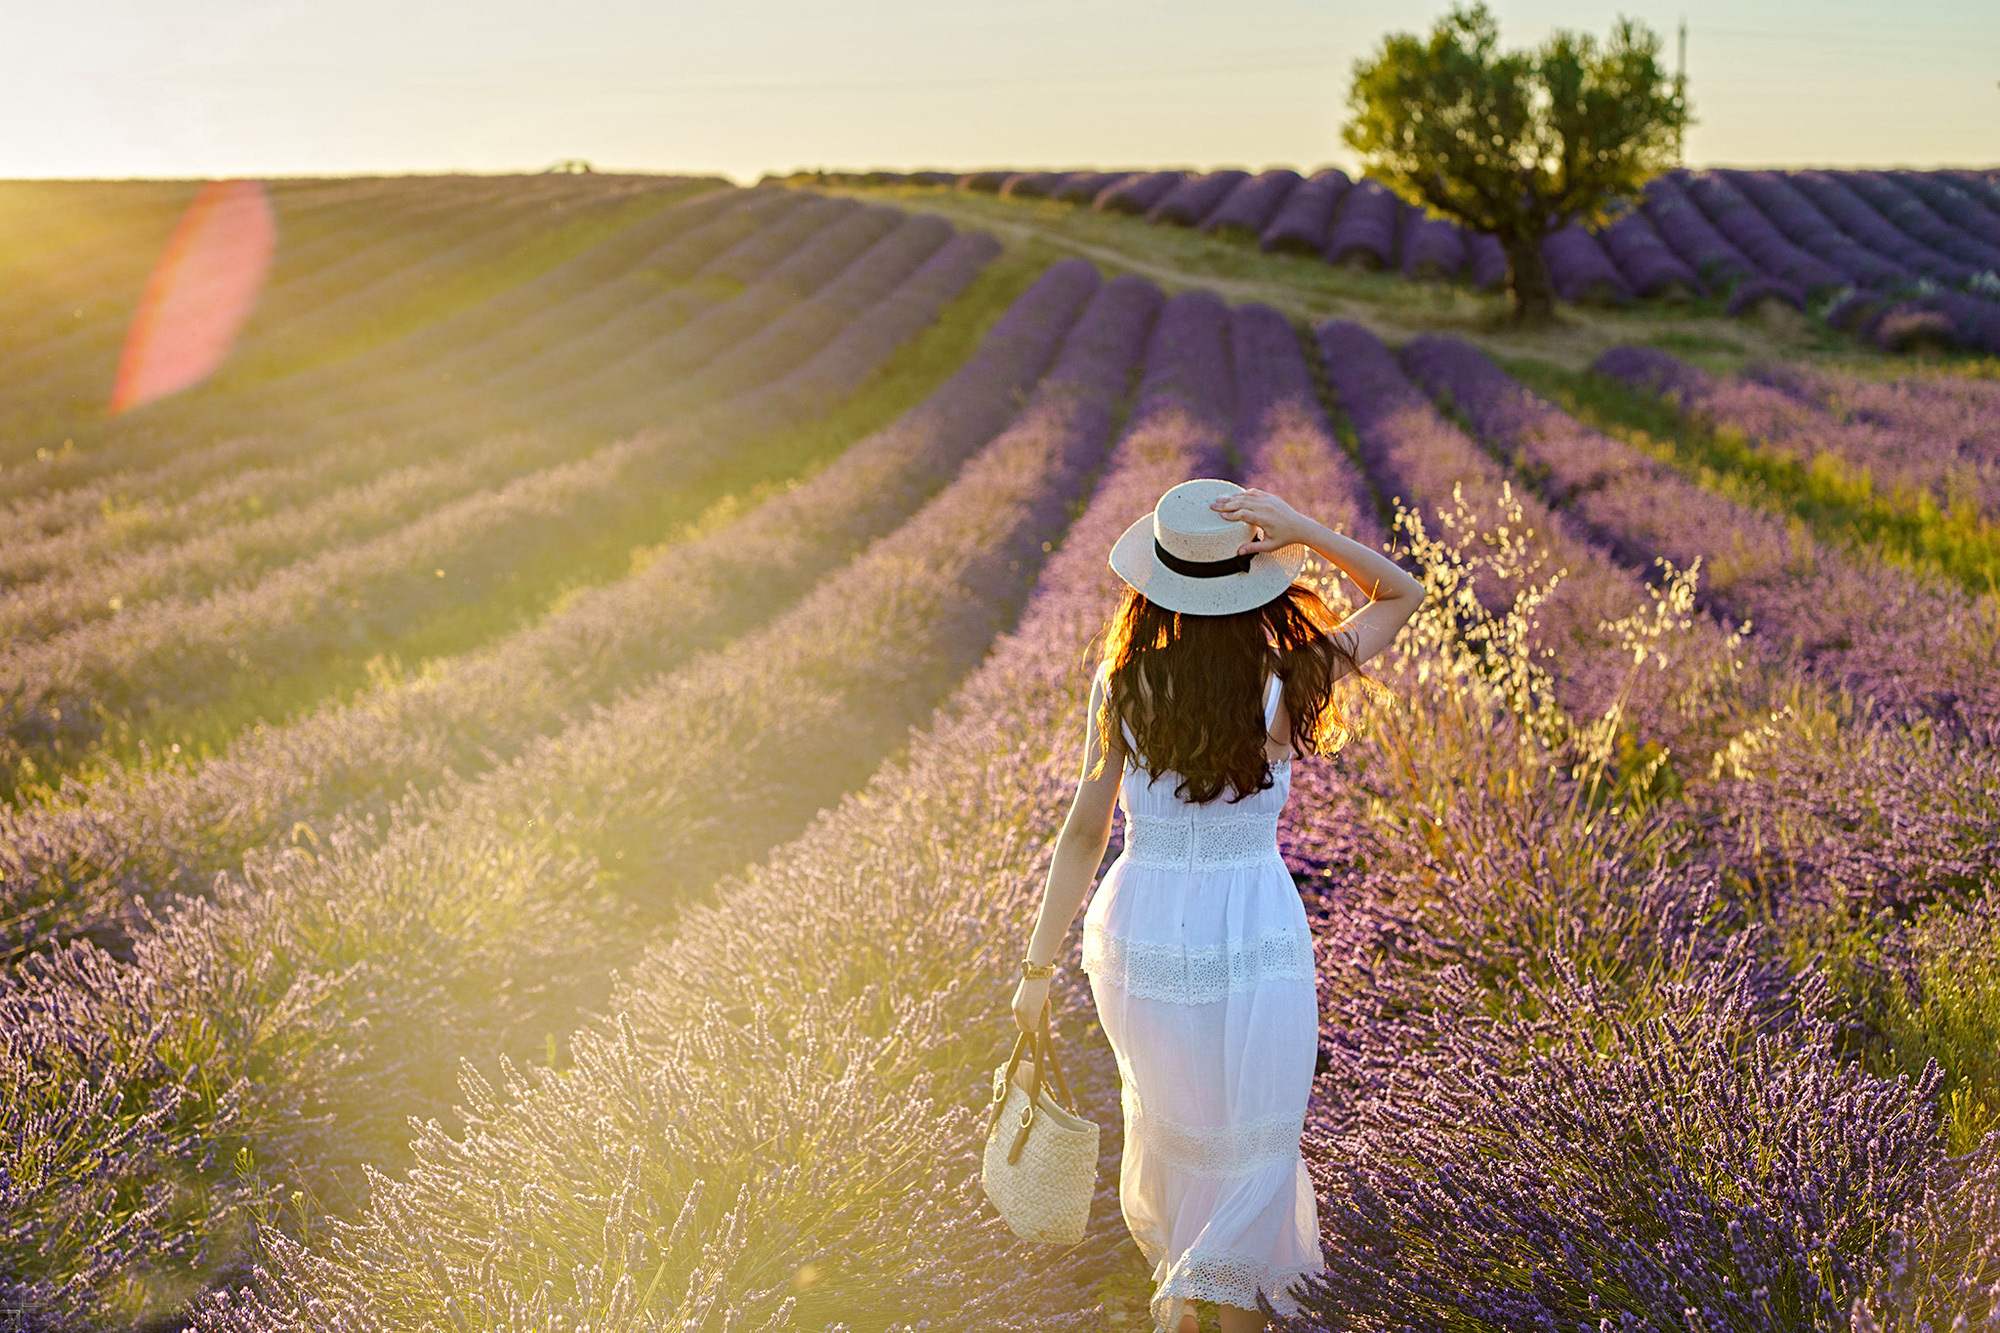 Hãy nhìn vào hình ảnh hoa oải hương Pháp và cảm nhận sự tinh tế, thơ mộng của loài hoa này. Sắc tím mê hoặc, hương thơm quyến rũ, đây là một điểm nhấn nổi bật của vùng Provence.